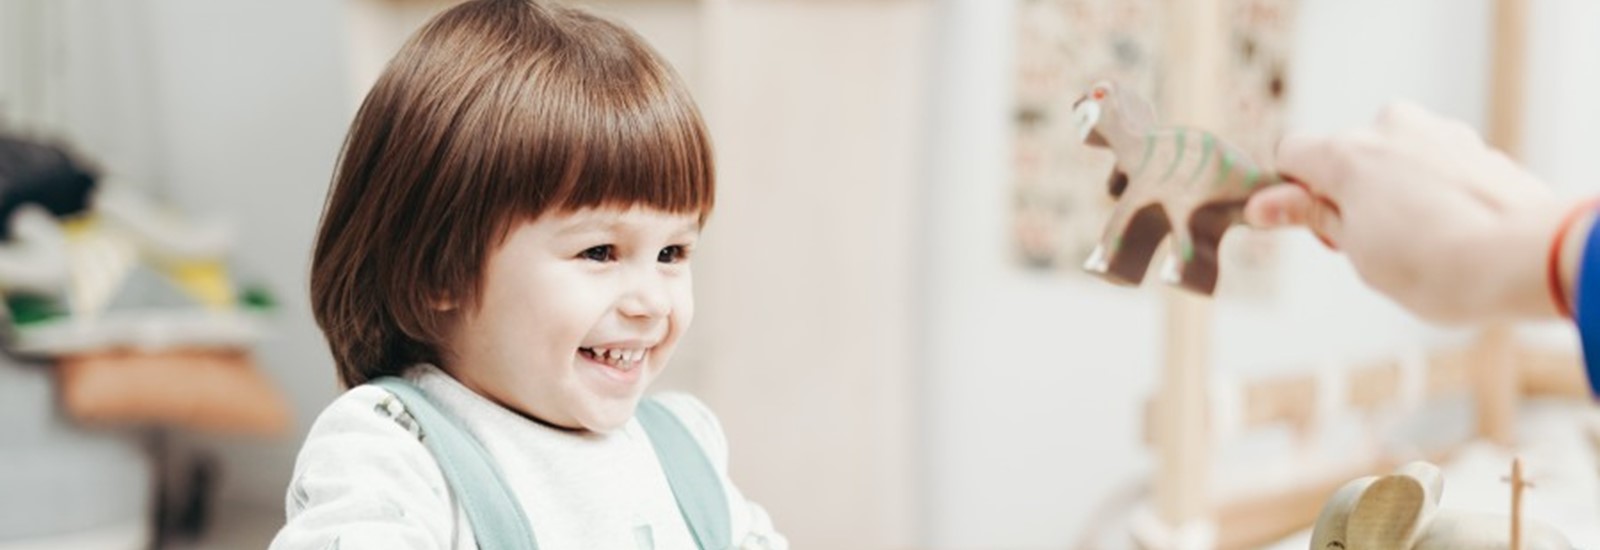 Klein meisje met bruin haar lachend aan het spelen met speelgoed in de crèche